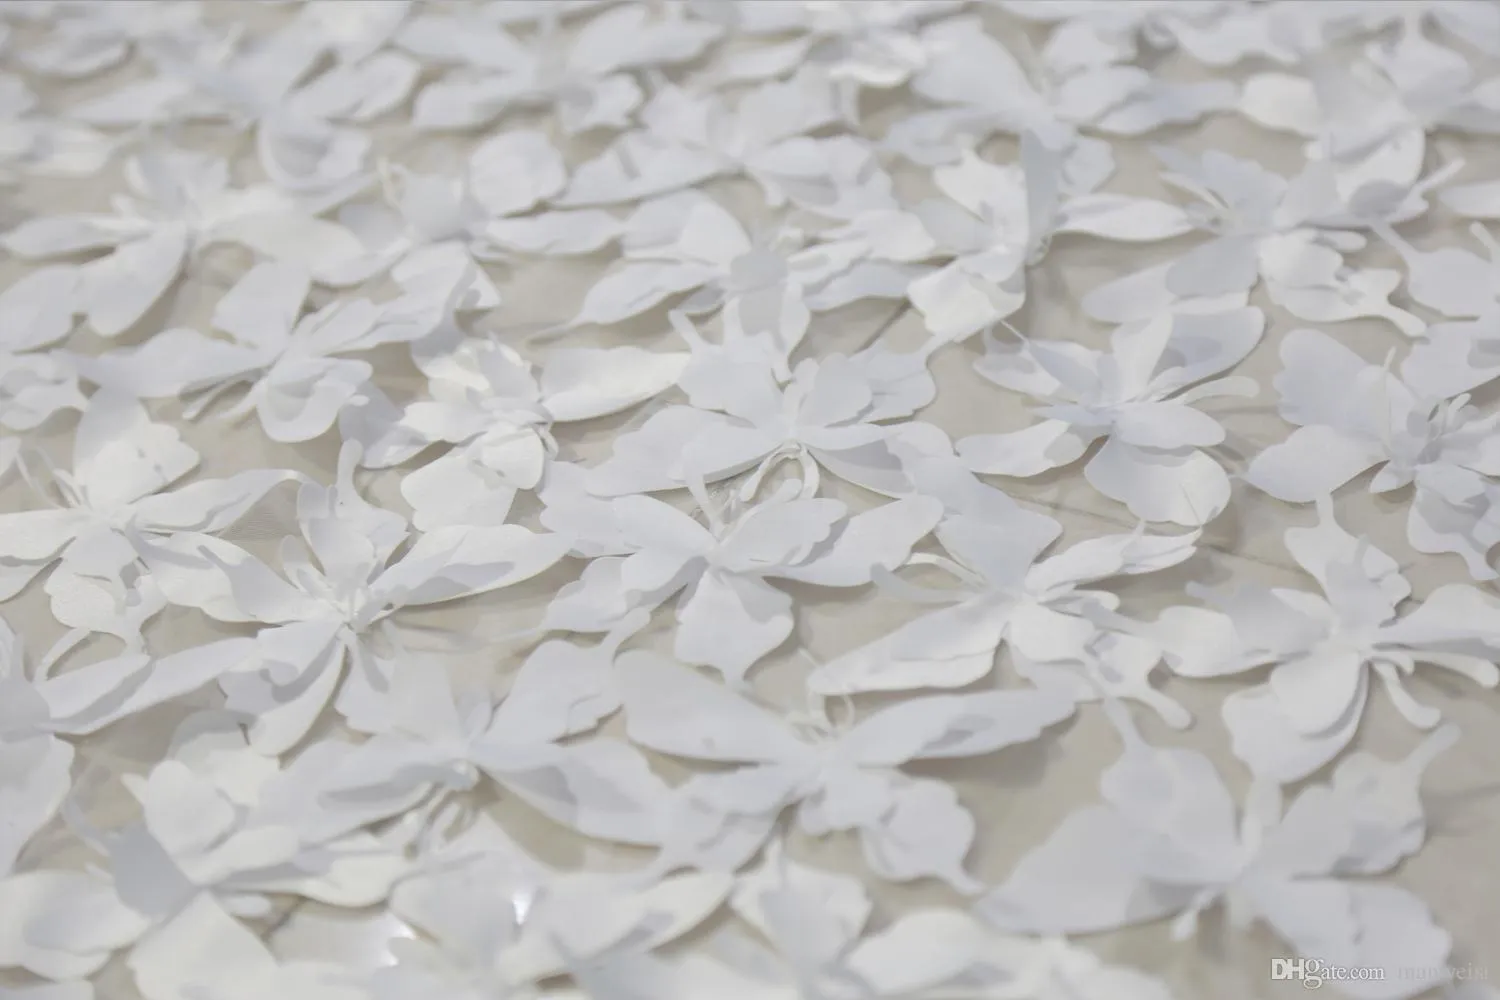 긴 아이보리 흰색 신부 베일 3D 꽃 나비 레이스 2 층 고급 대성당 길이 3m 신부 웨딩 베일 콤 100% re276u